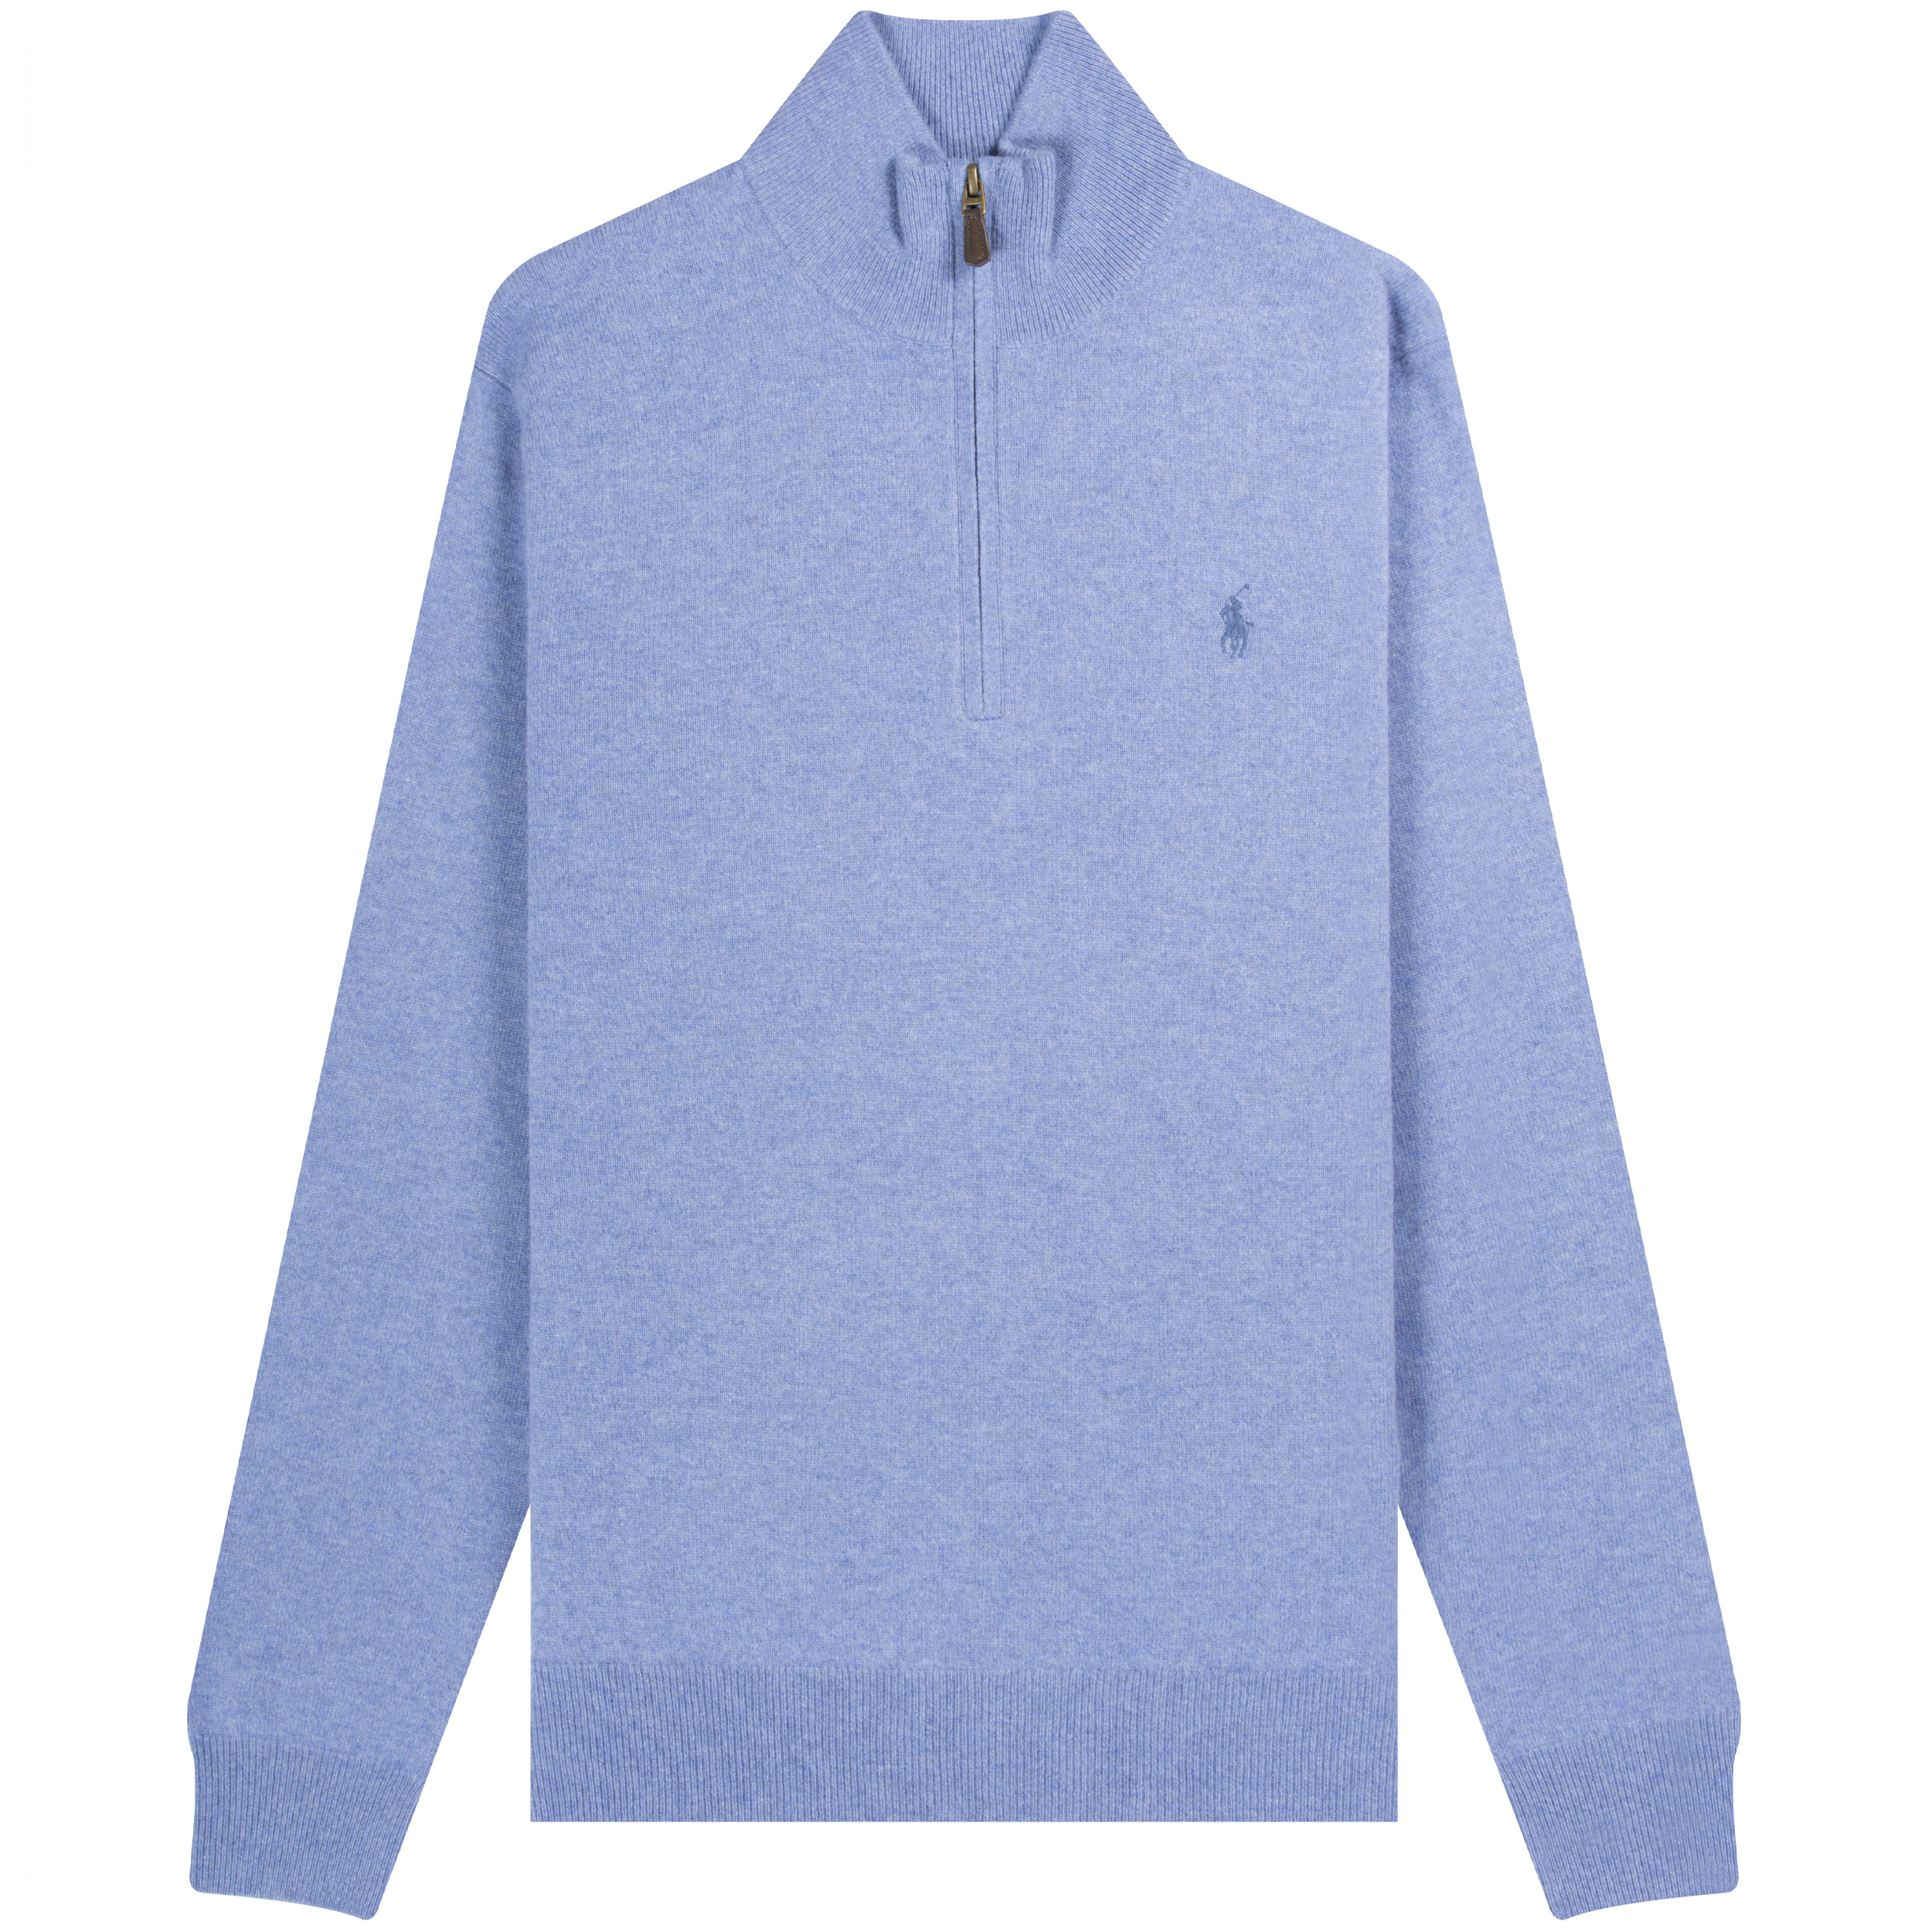 Polo Ralph Lauren ’1/4 Zip’ Knit Blue Heather